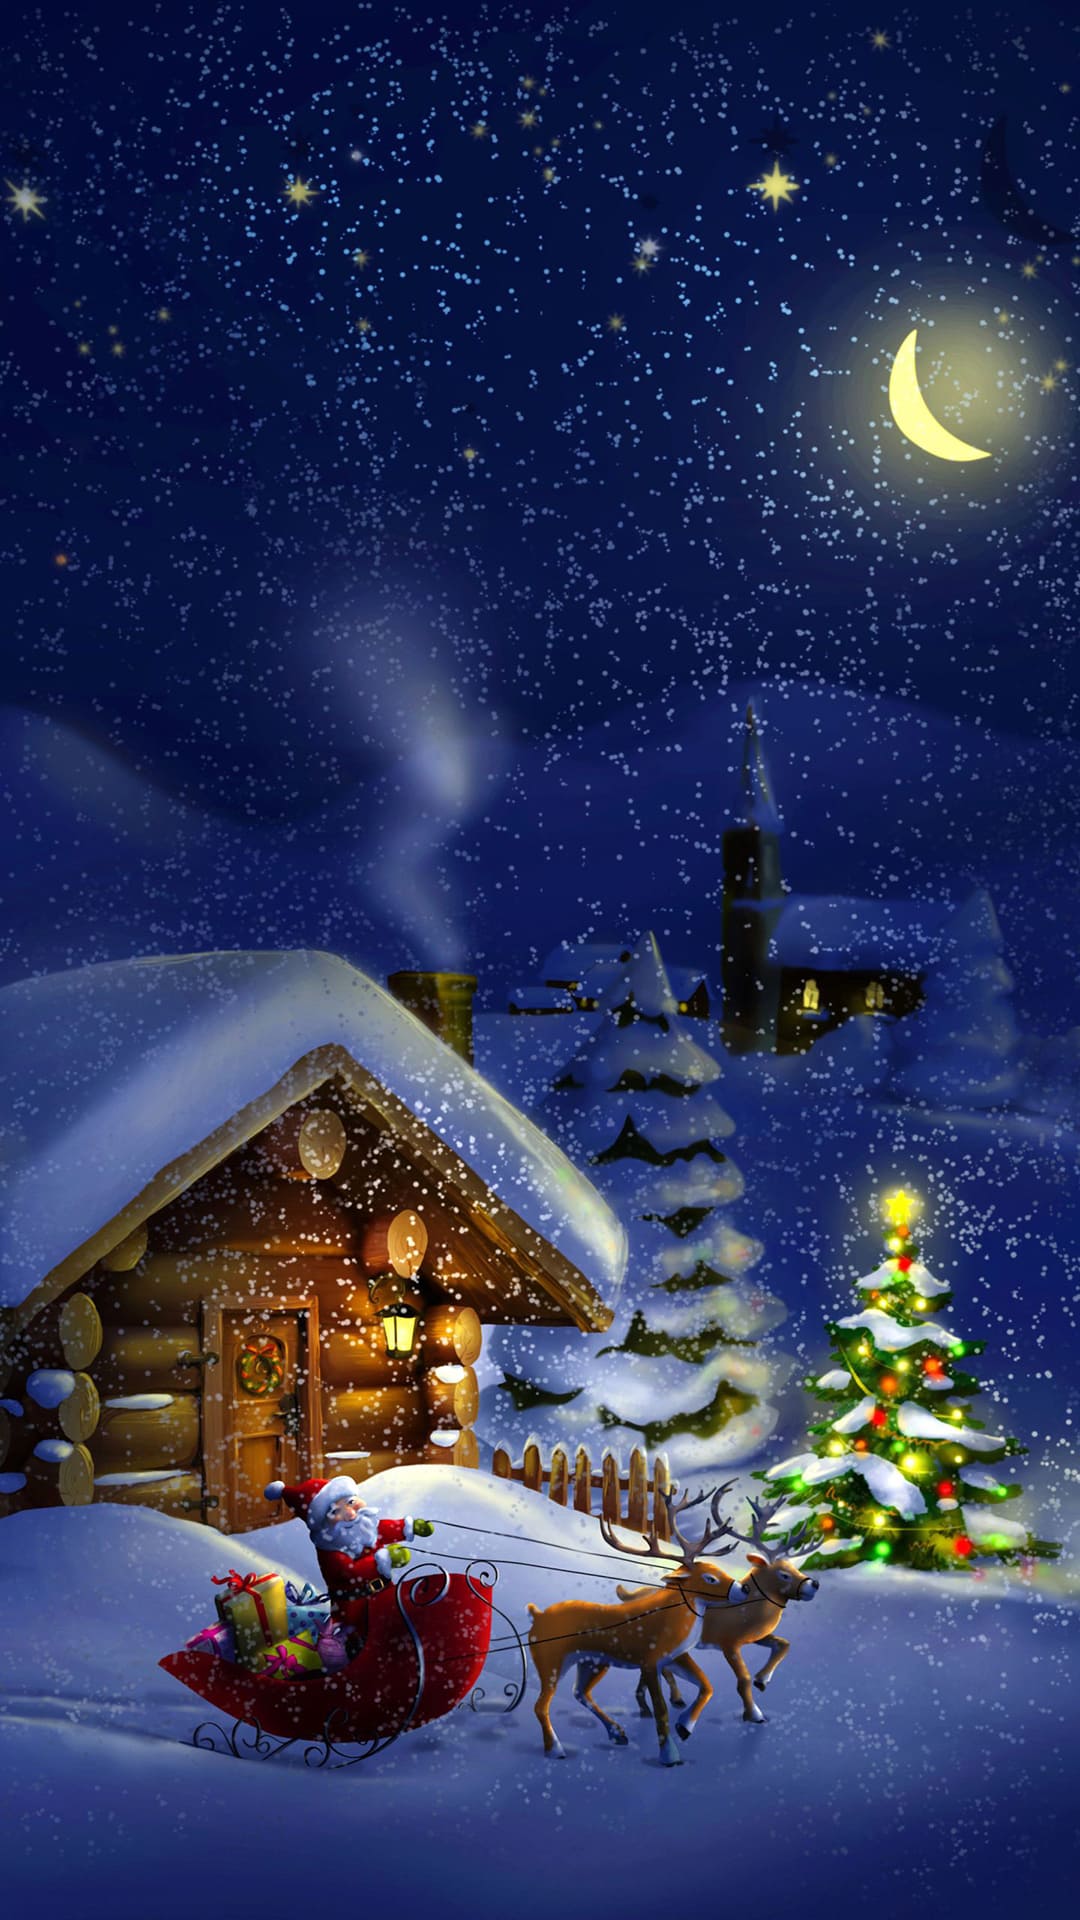 Christmas Scene Wallpaper - TubeWP